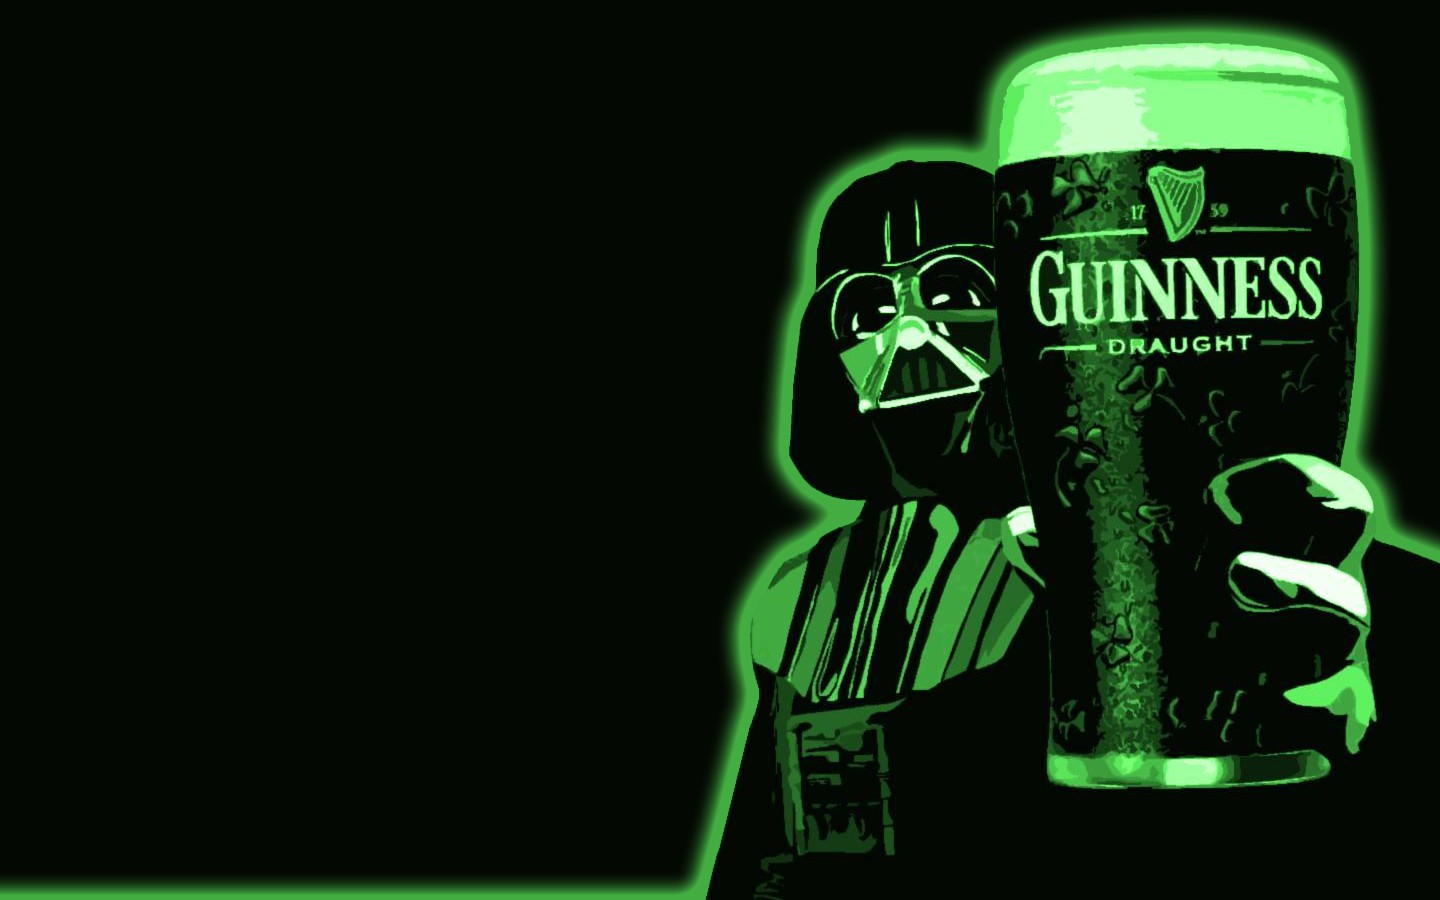 Beer Star Wars Darth Vader Guinness Artwork Green 1440x900